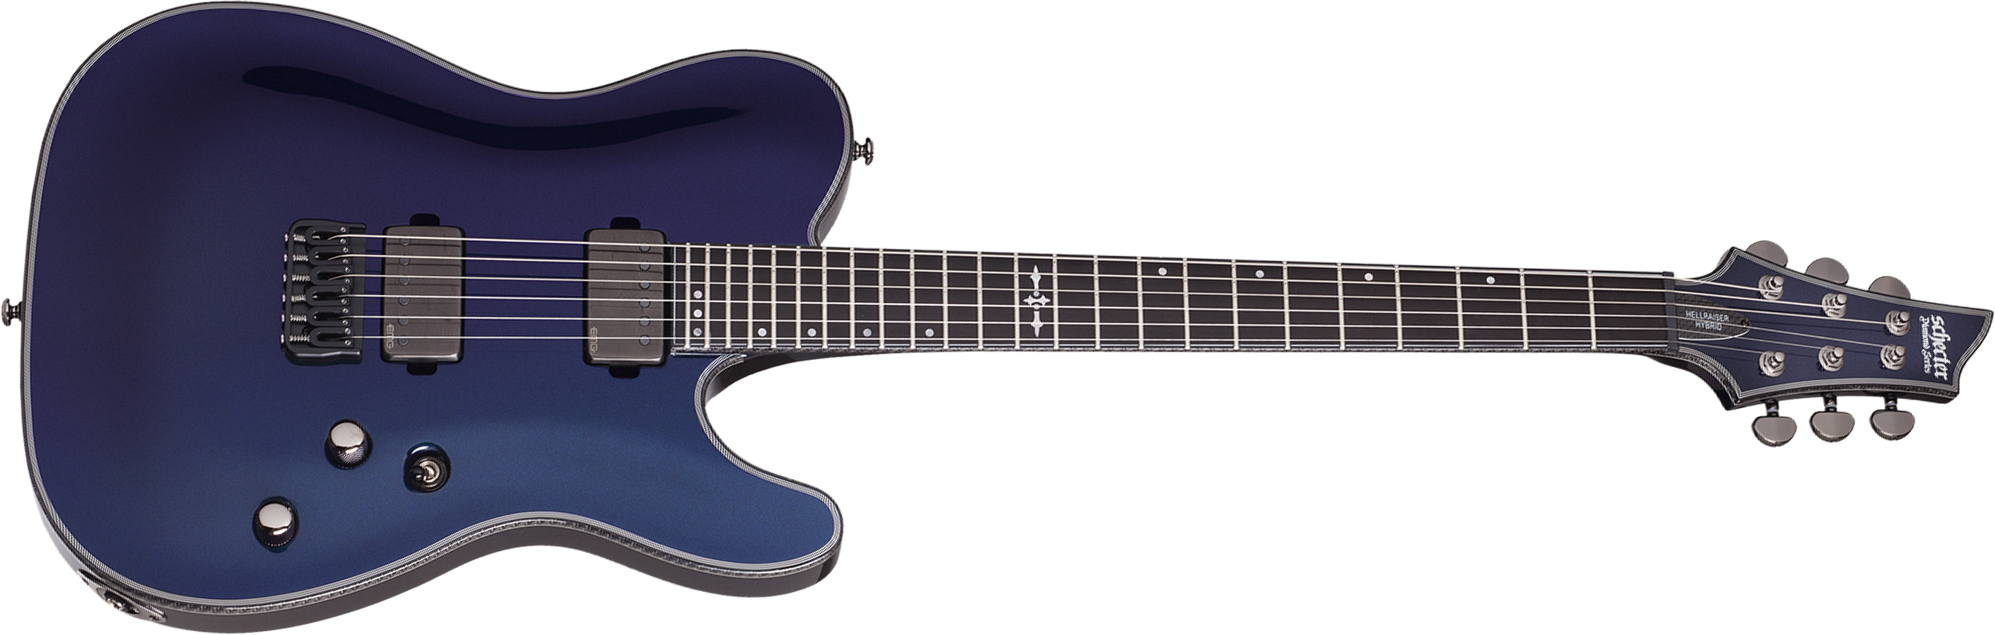 Schecter Pt Hellraiser Hybrid 2h Emg Ht Eb - Ultraviolet - Televorm elektrische gitaar - Main picture